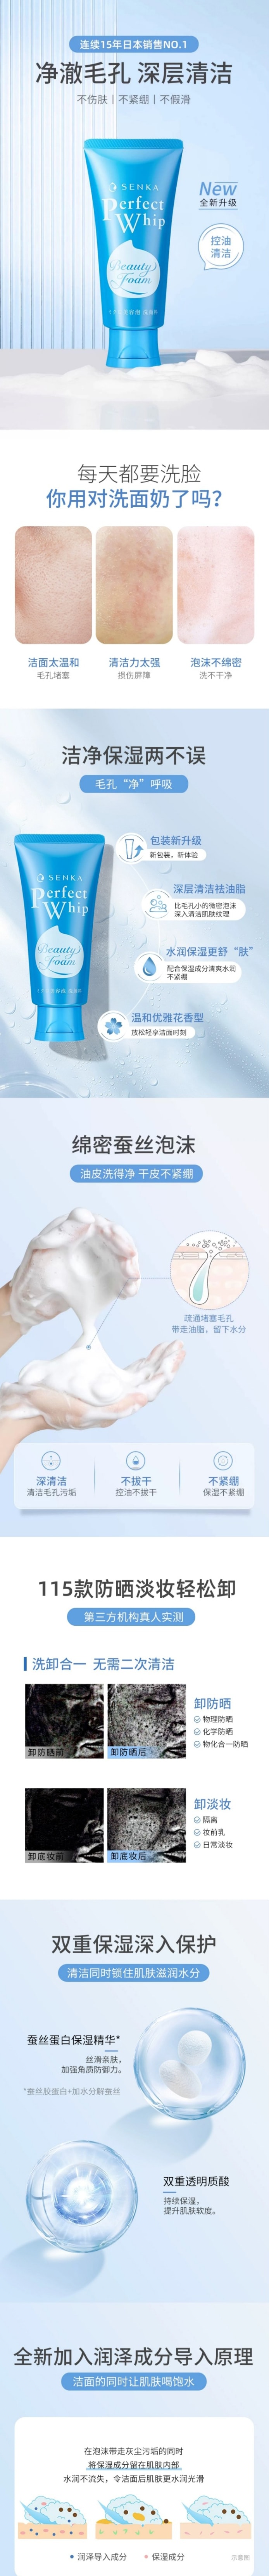 【日本直郵】SHISEIDO資生堂 SENKA 洗顏專科 超微米濃密泡沫洗卸兩用潔面乳  120g